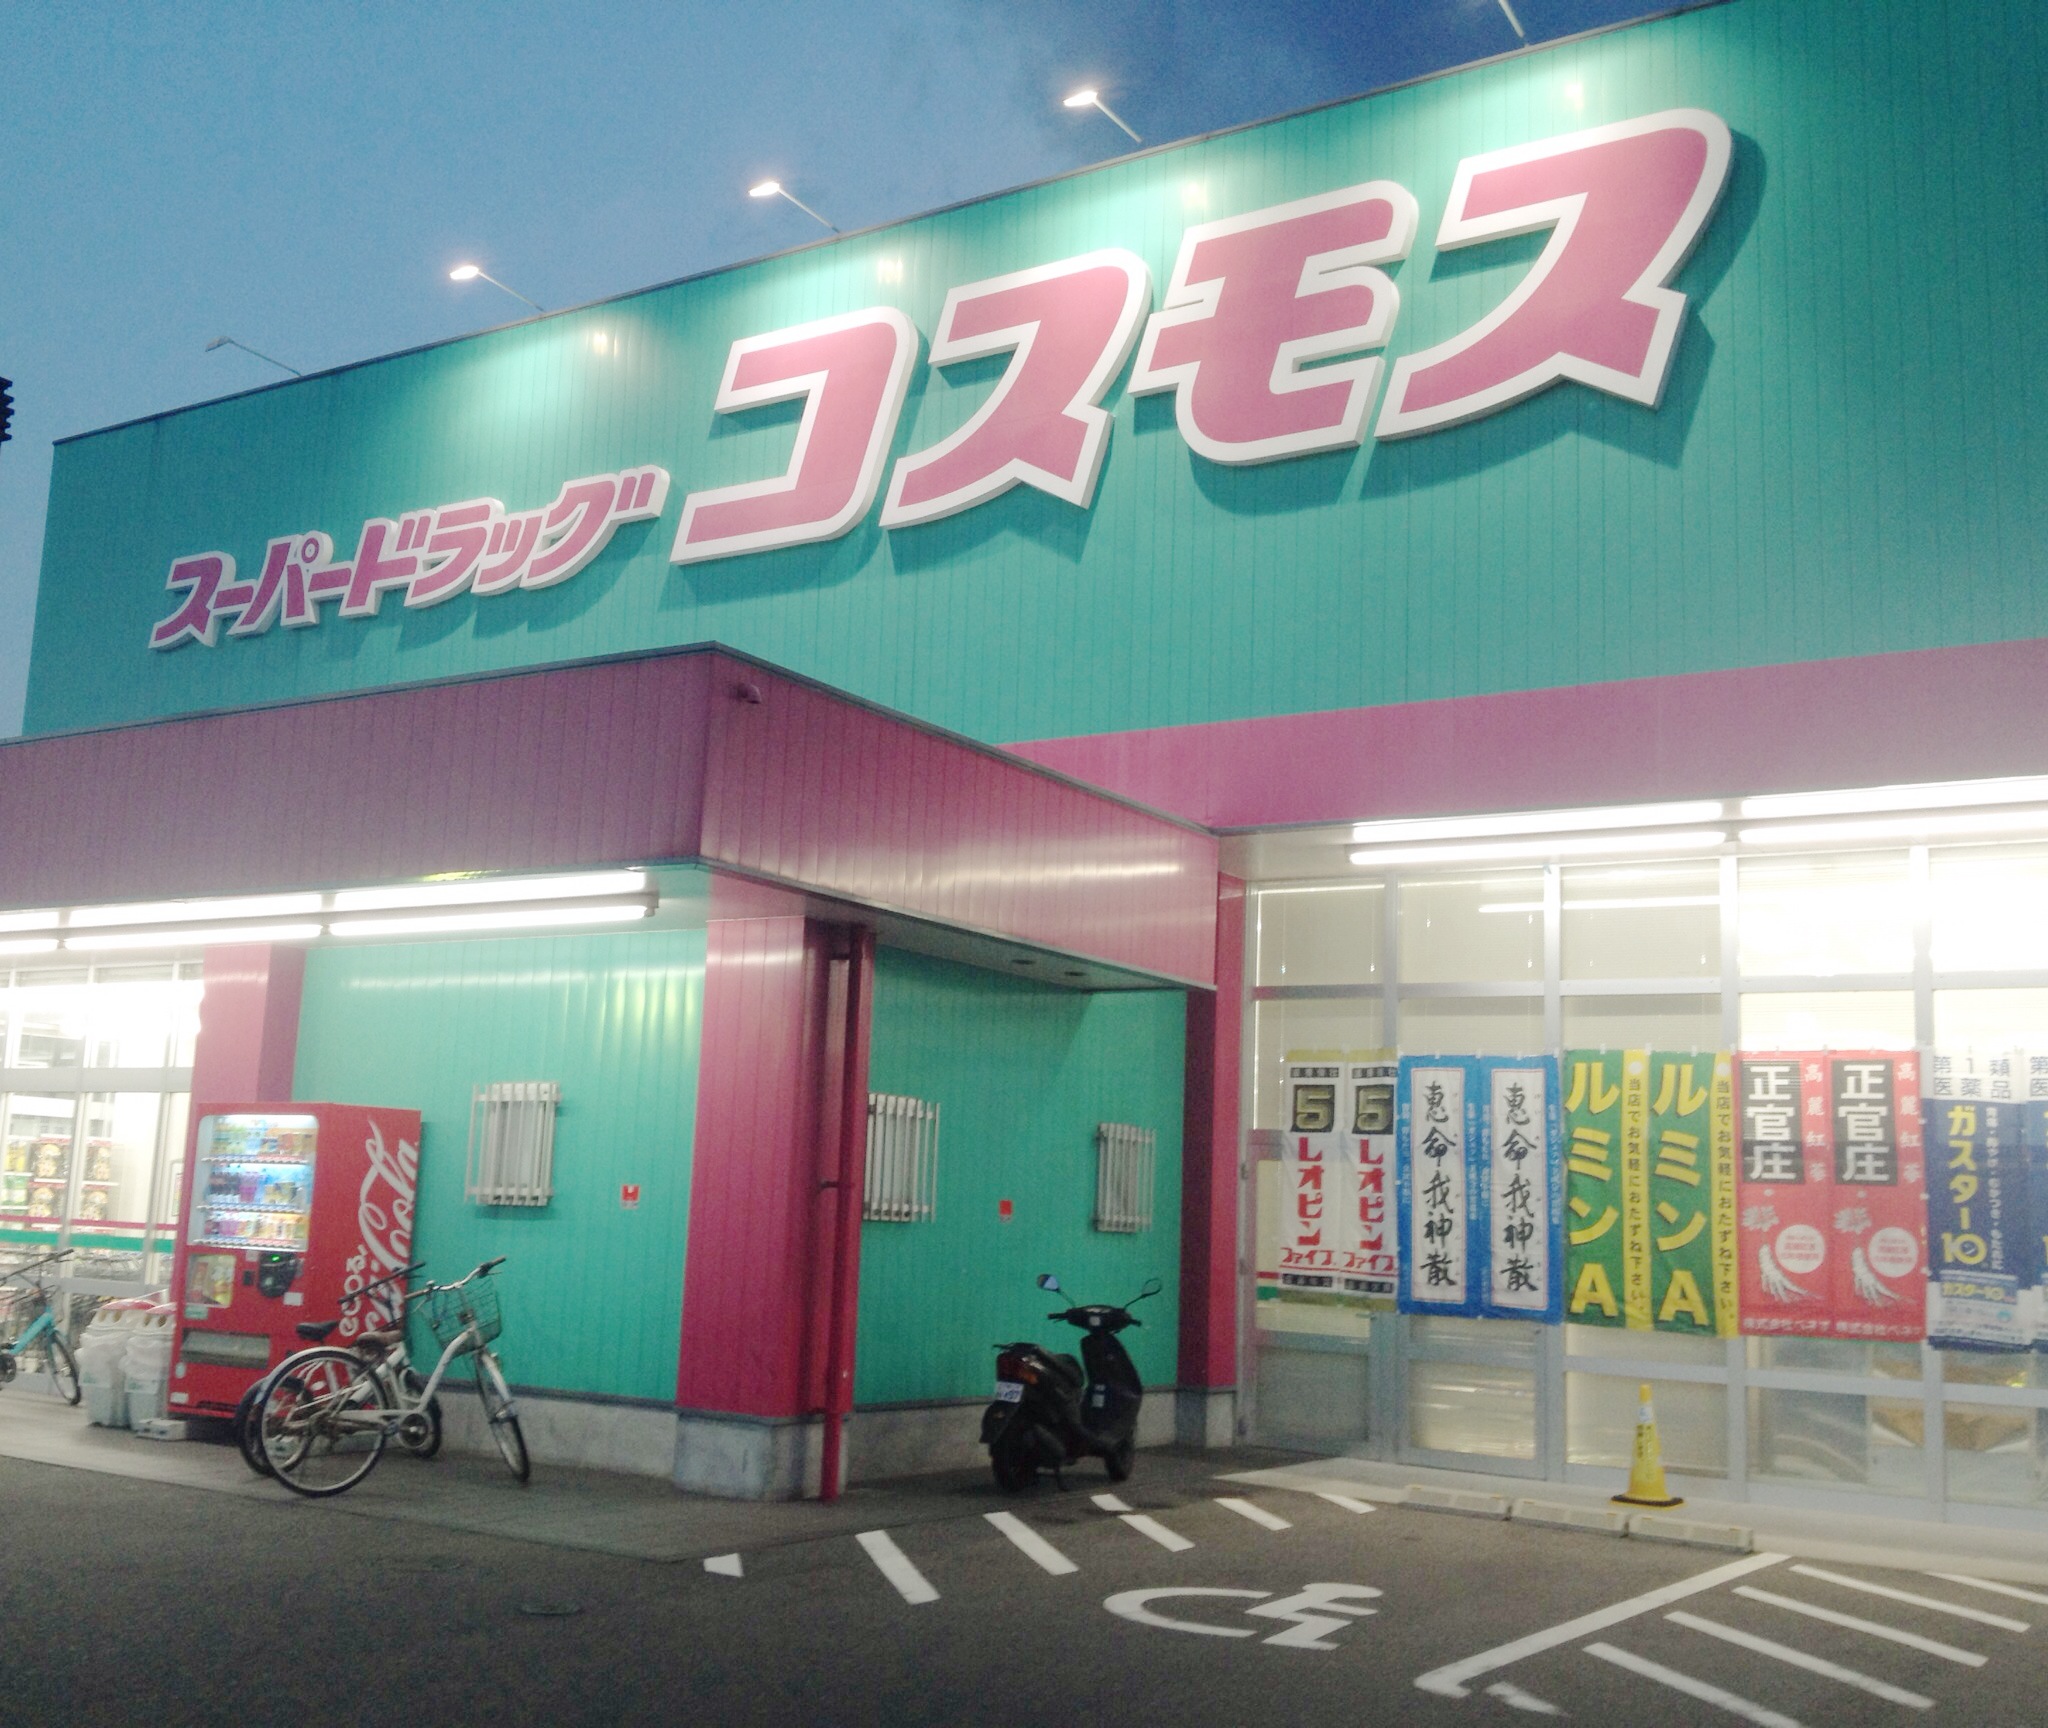 Dorakkusutoa. Discount drag cosmos Shin-Shimonoseki shop 890m until (drugstore)